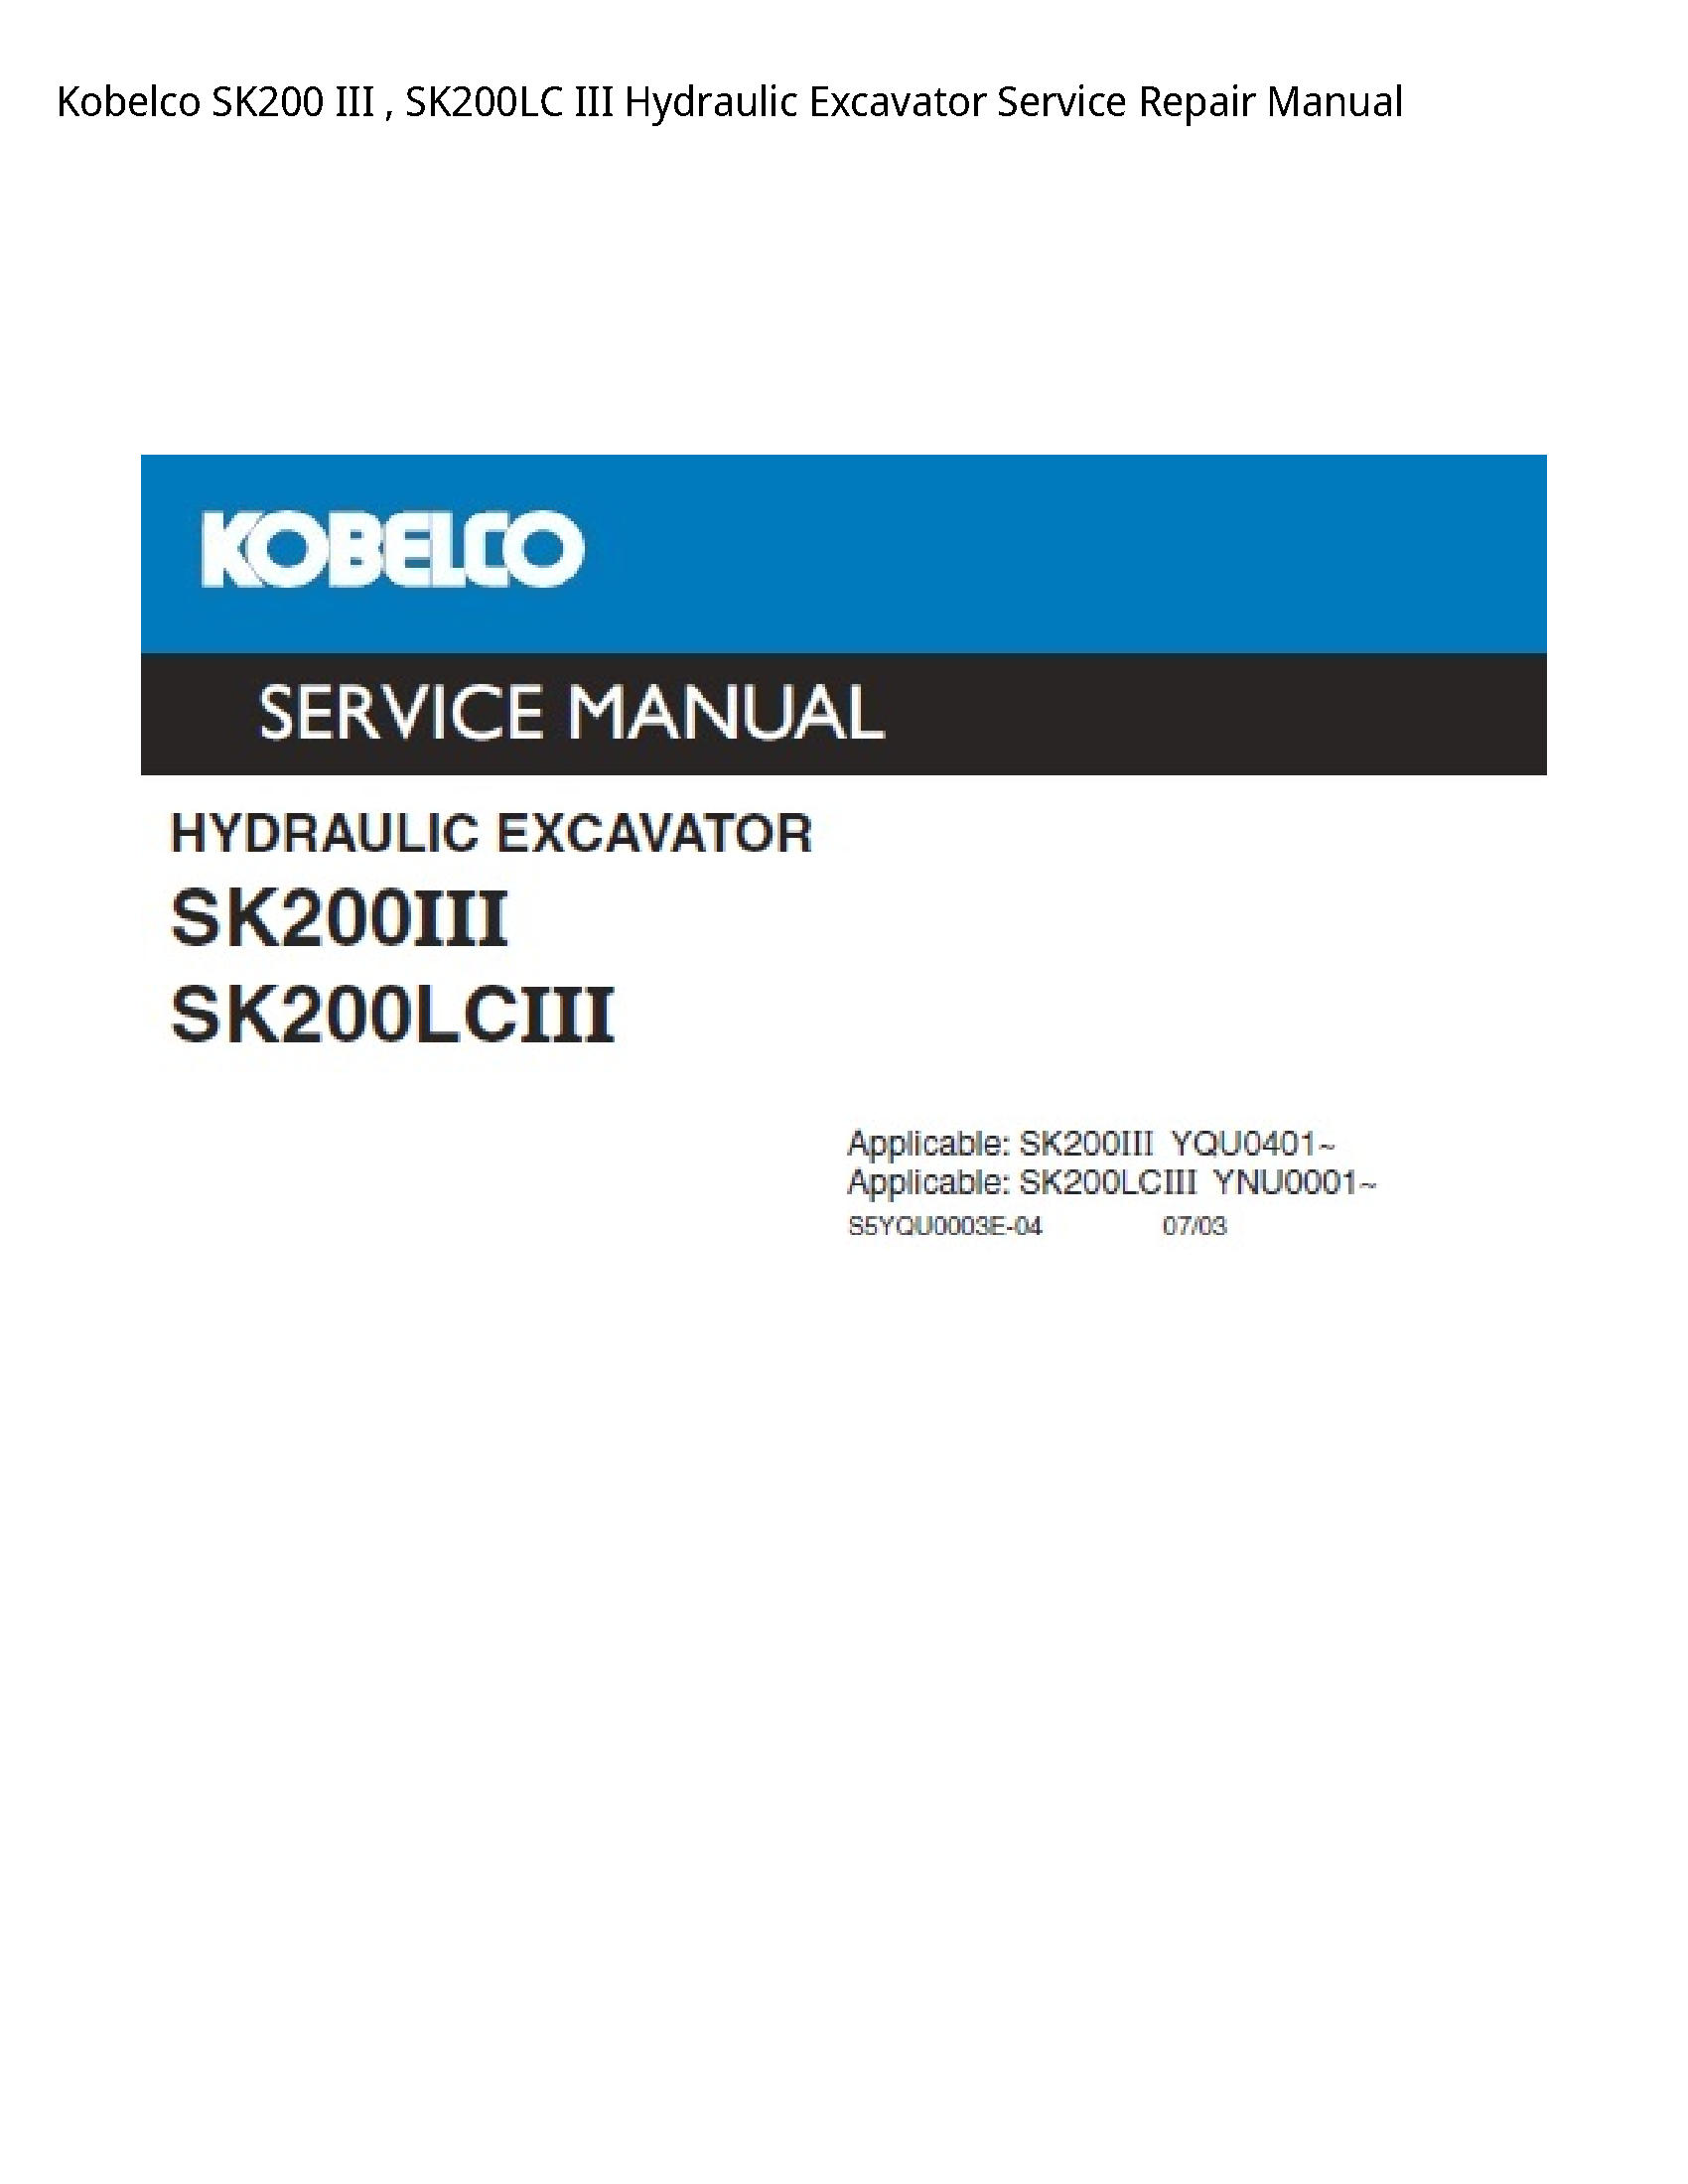 Kobelco SK200 III III Hydraulic Excavator manual